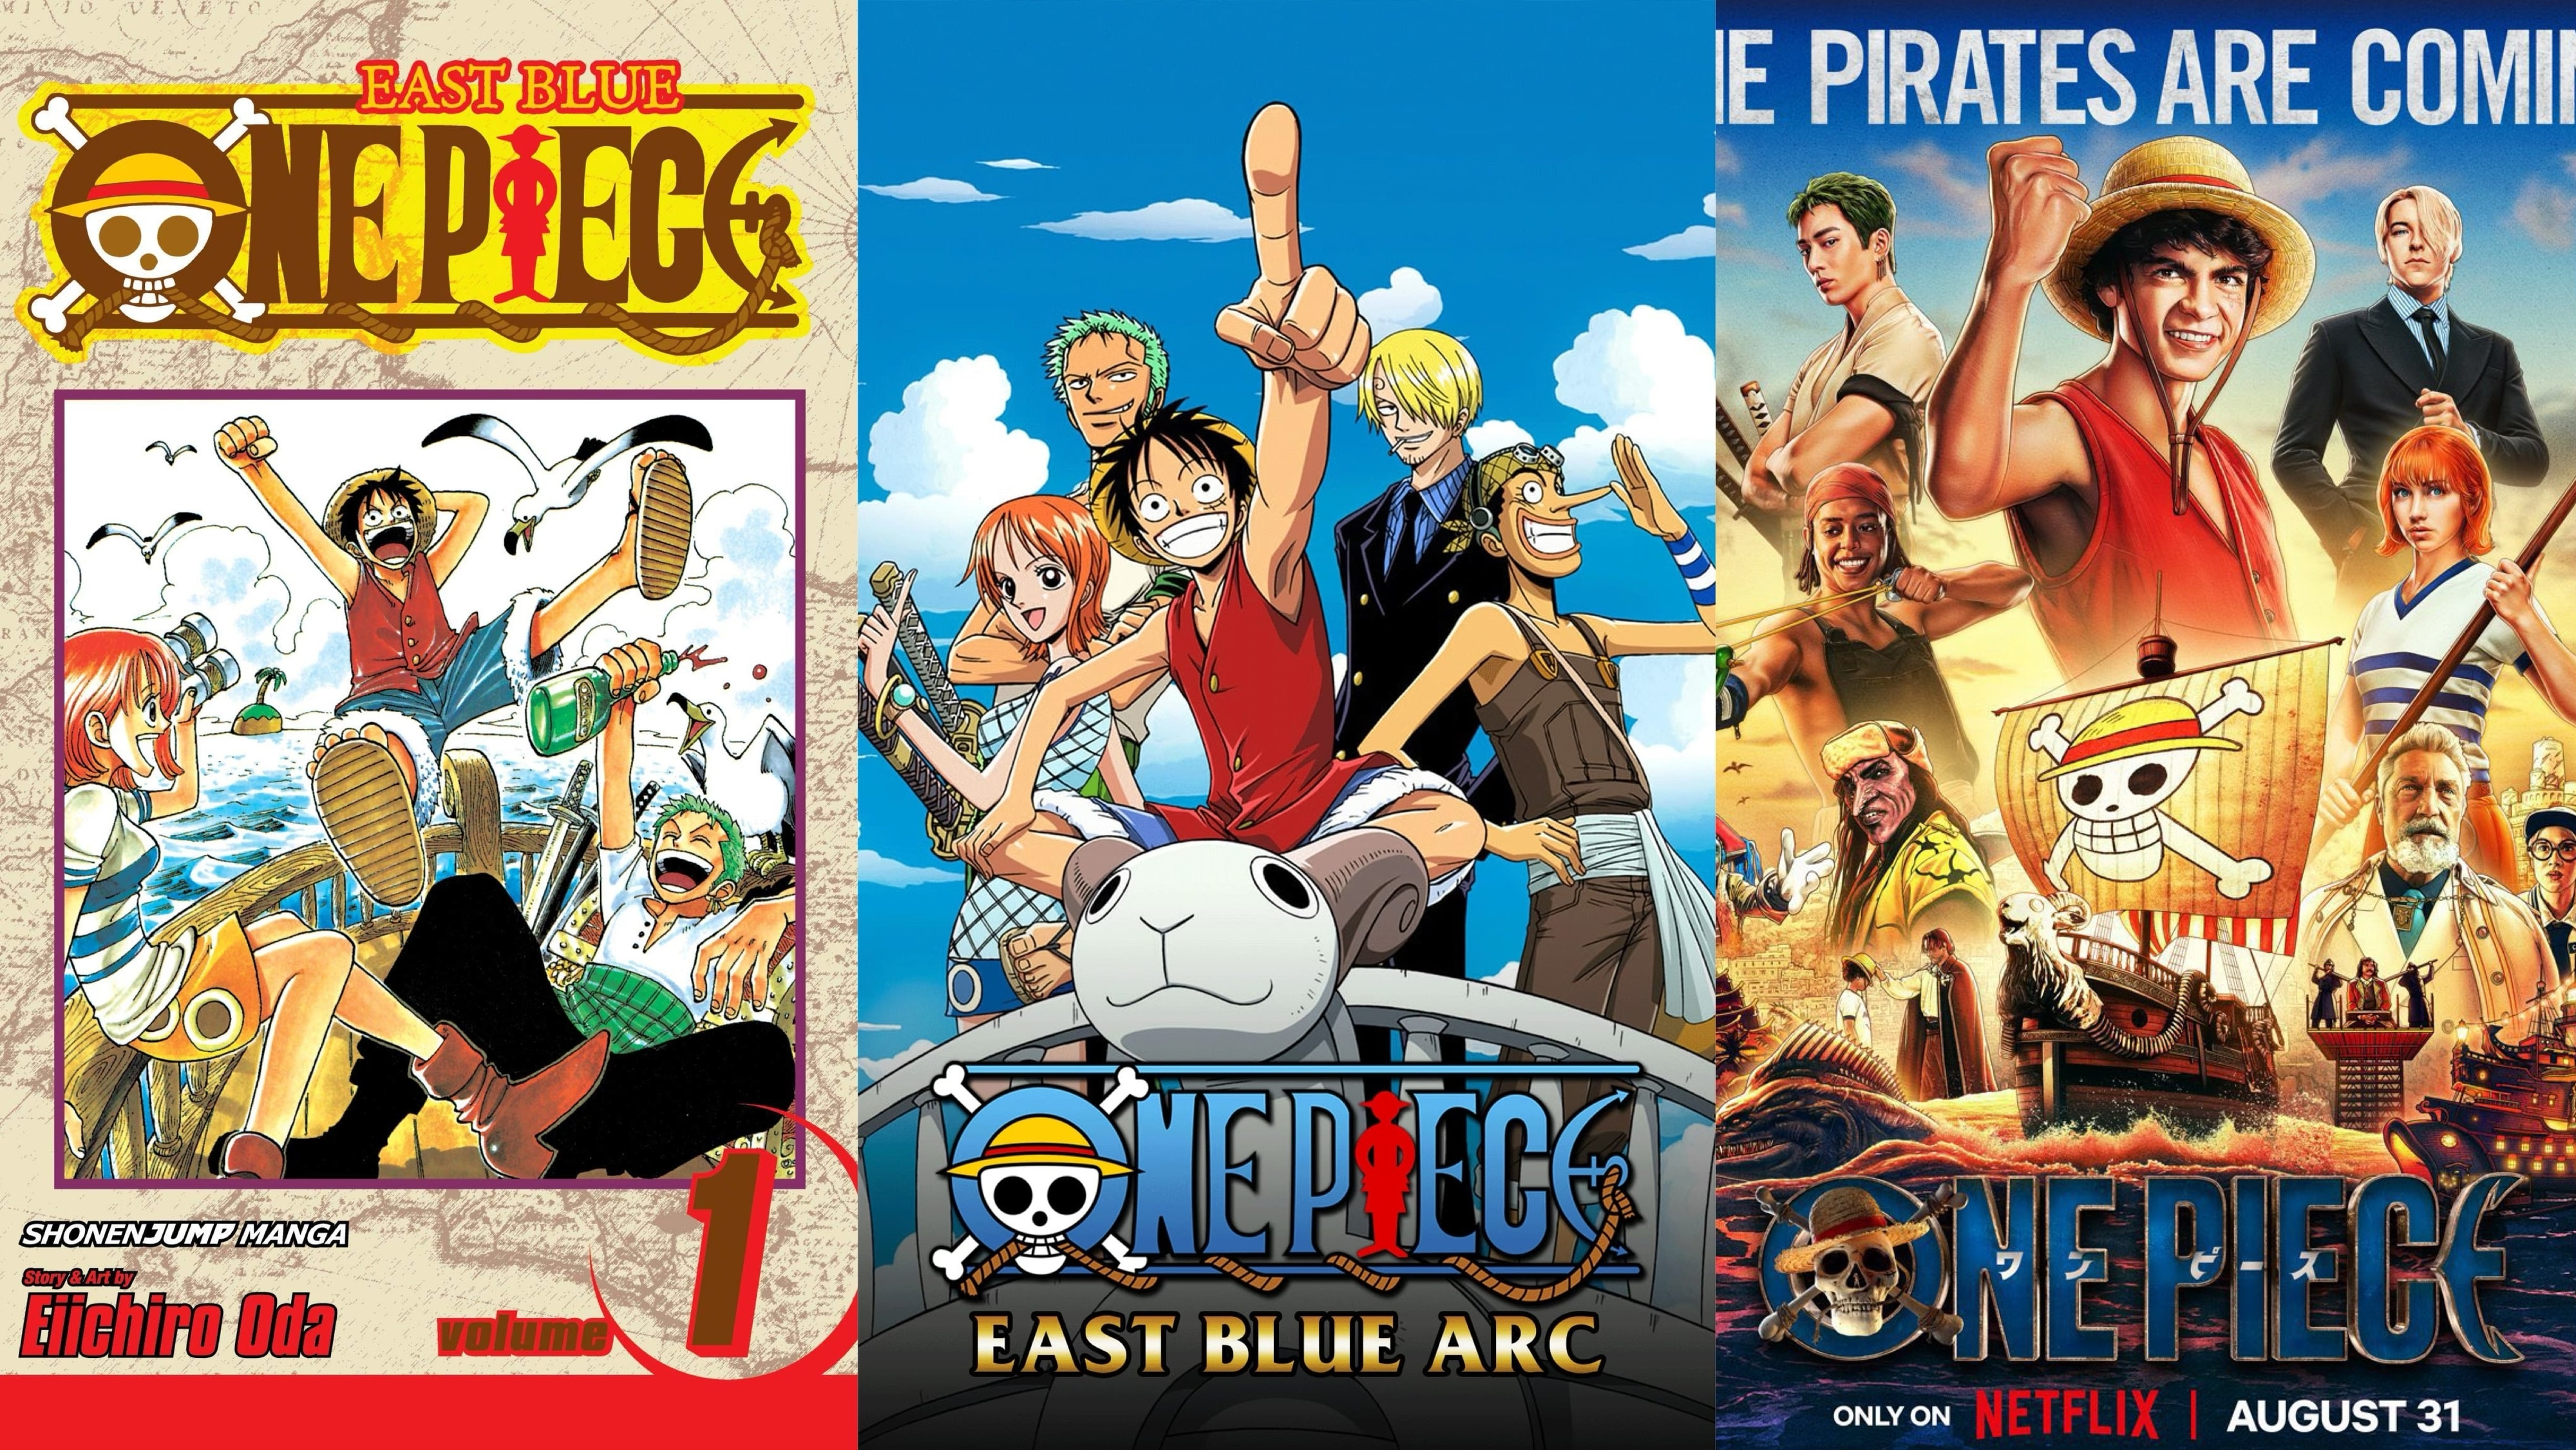 One Piece Film: Z  One piece comic, Luffy, One piece manga